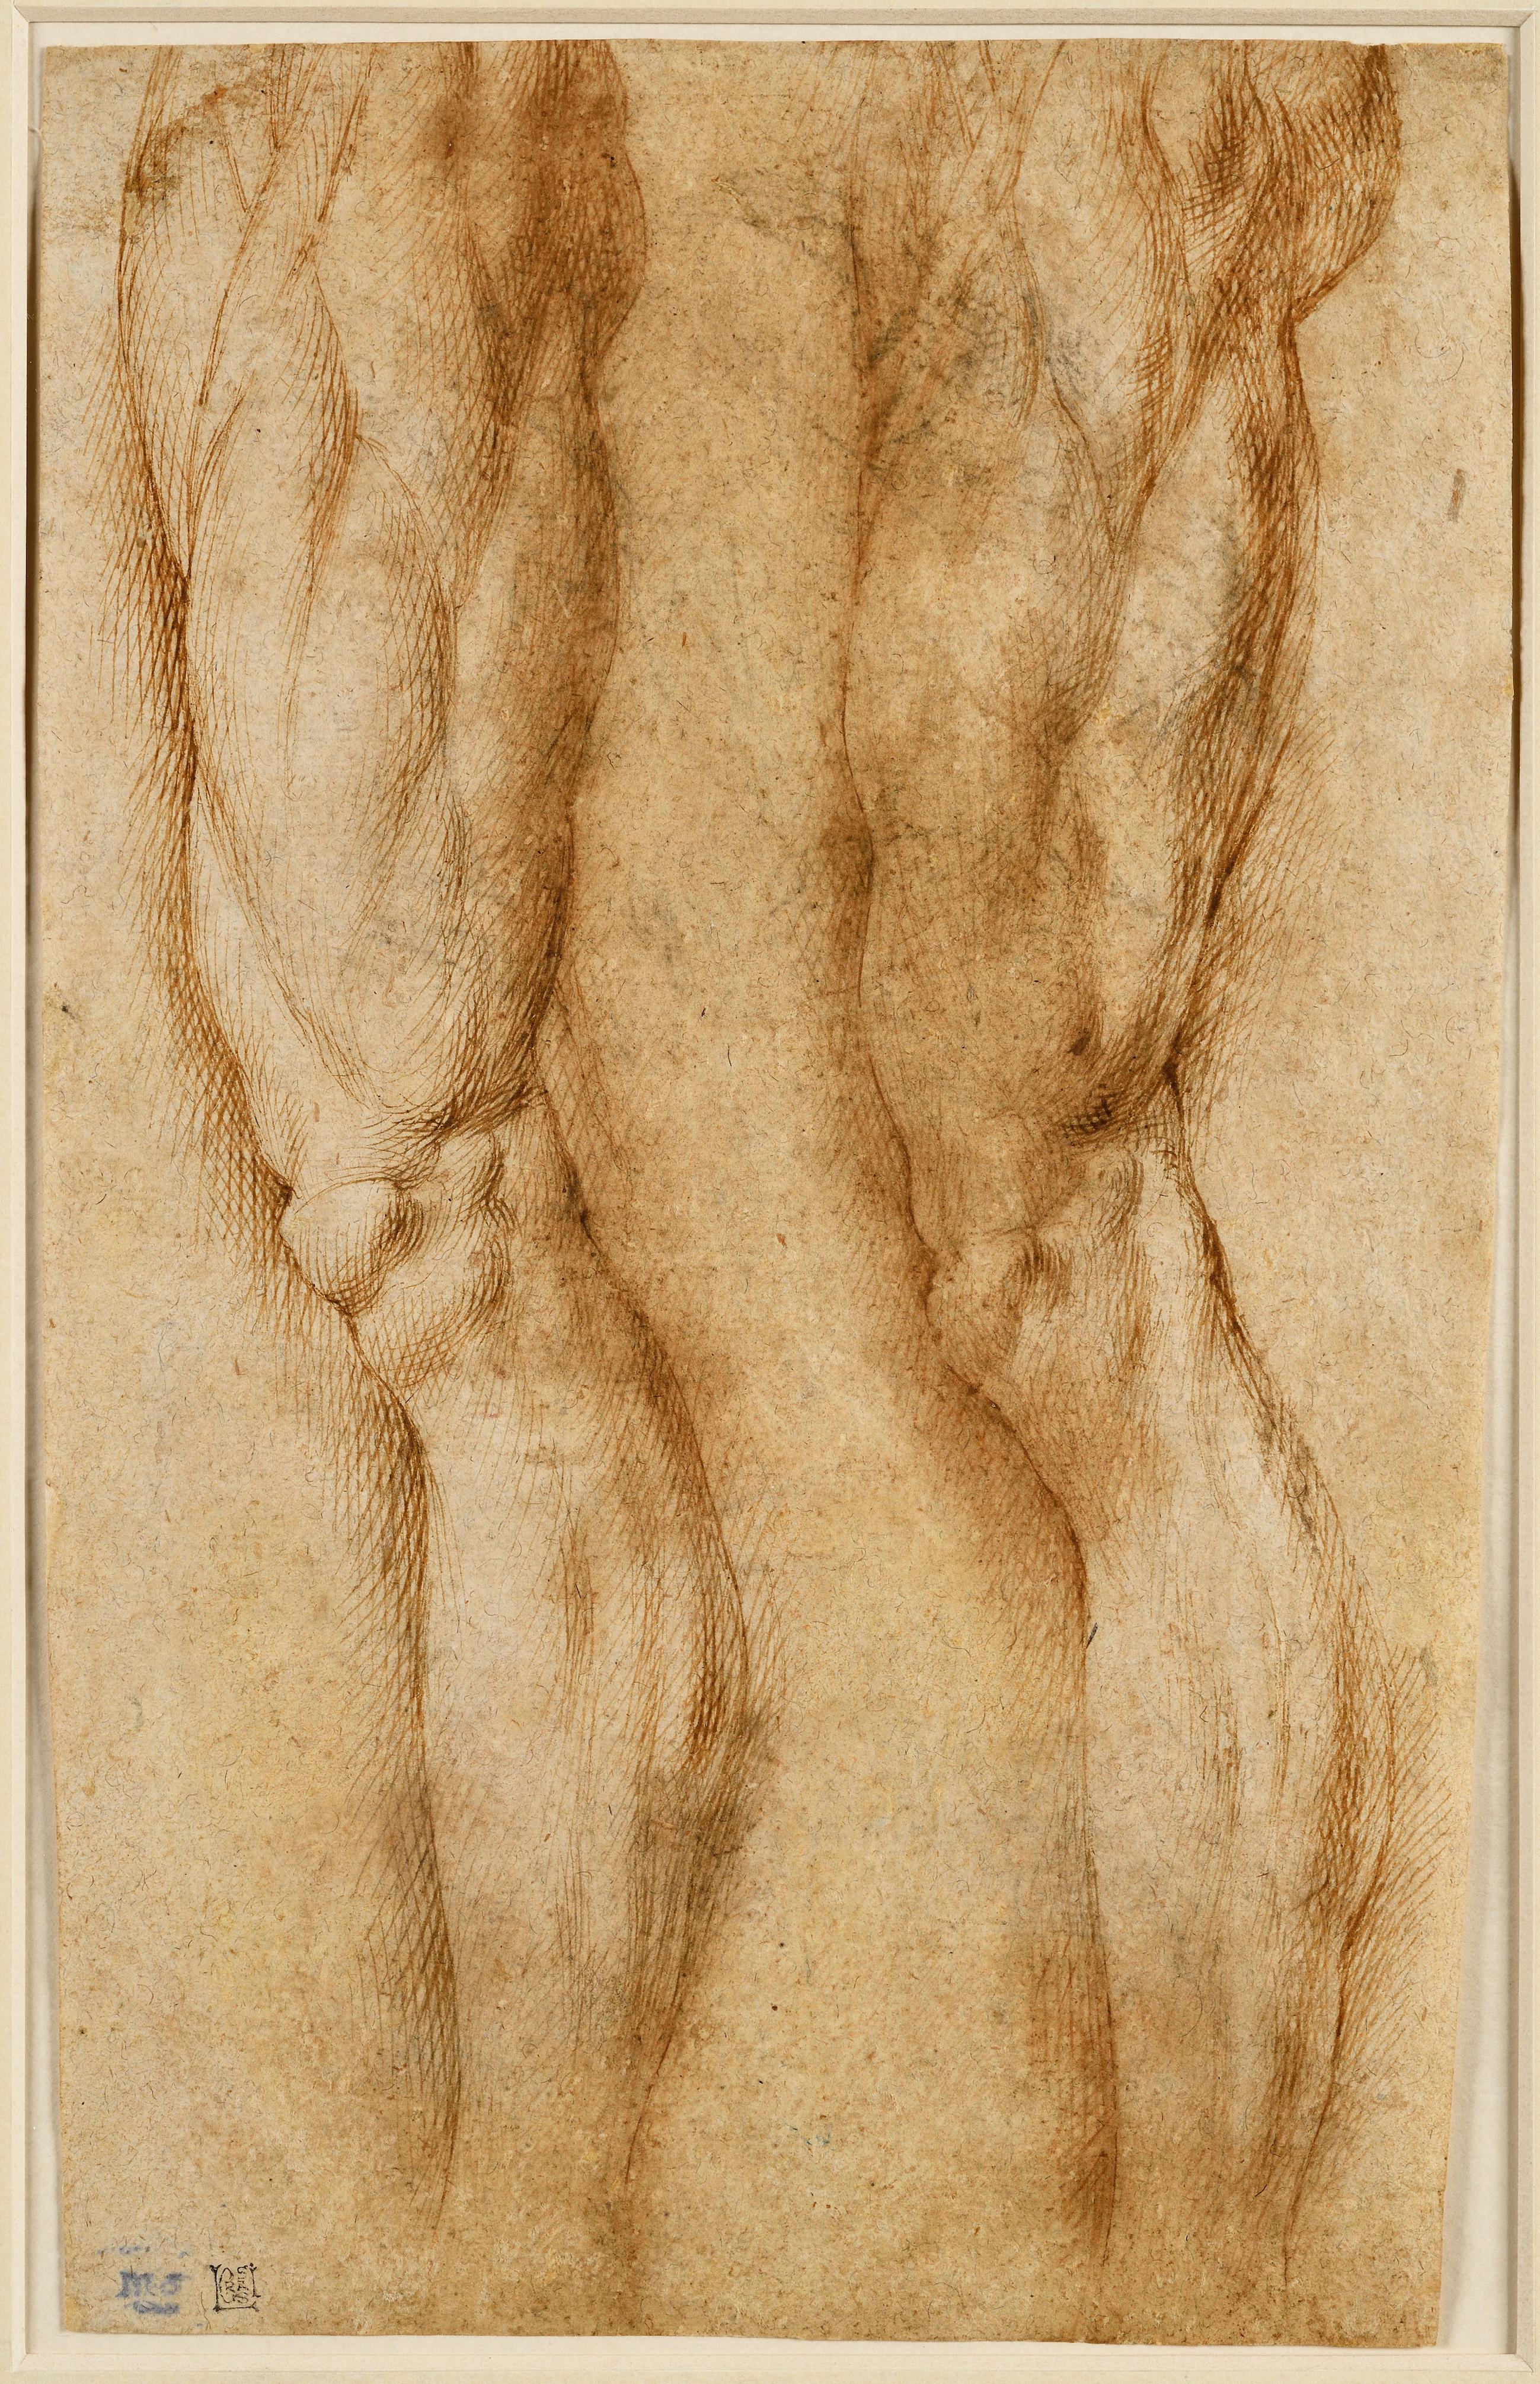 BARTOLOMEO PASSAROTTI
(Bologne 1529 - 1592)
Étude de deux jambes

Plume et encre brune, sur craie noire

34,5 x 21,5 cm
Porte en bas à gauche la marque de collectionneur de Maurice Marignane (L. 1872) et la marque de collectionneur de Luigi Grassi